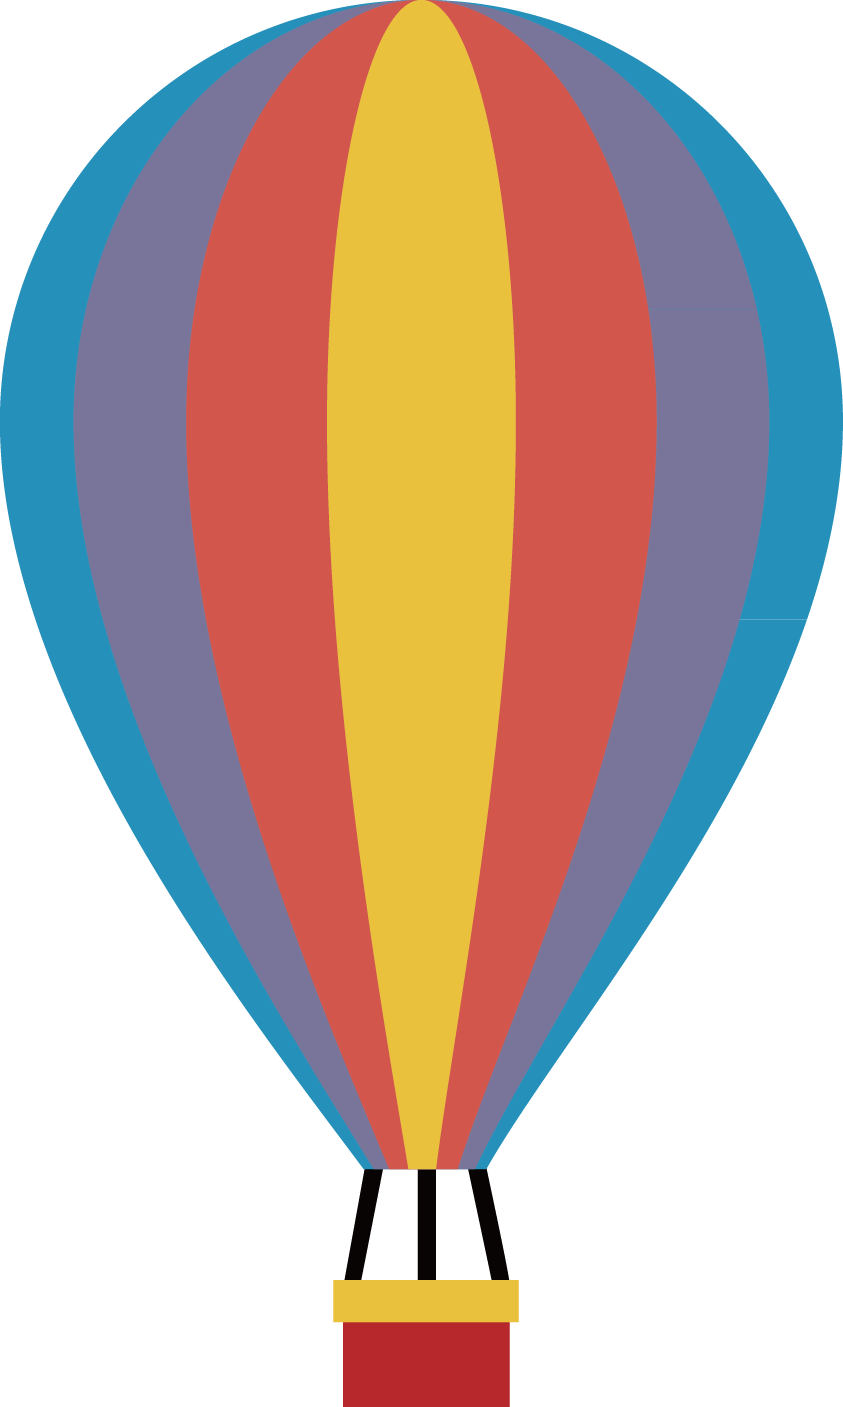 Hot Air Balloon - Hot Air Balloon Vector (843x1407)